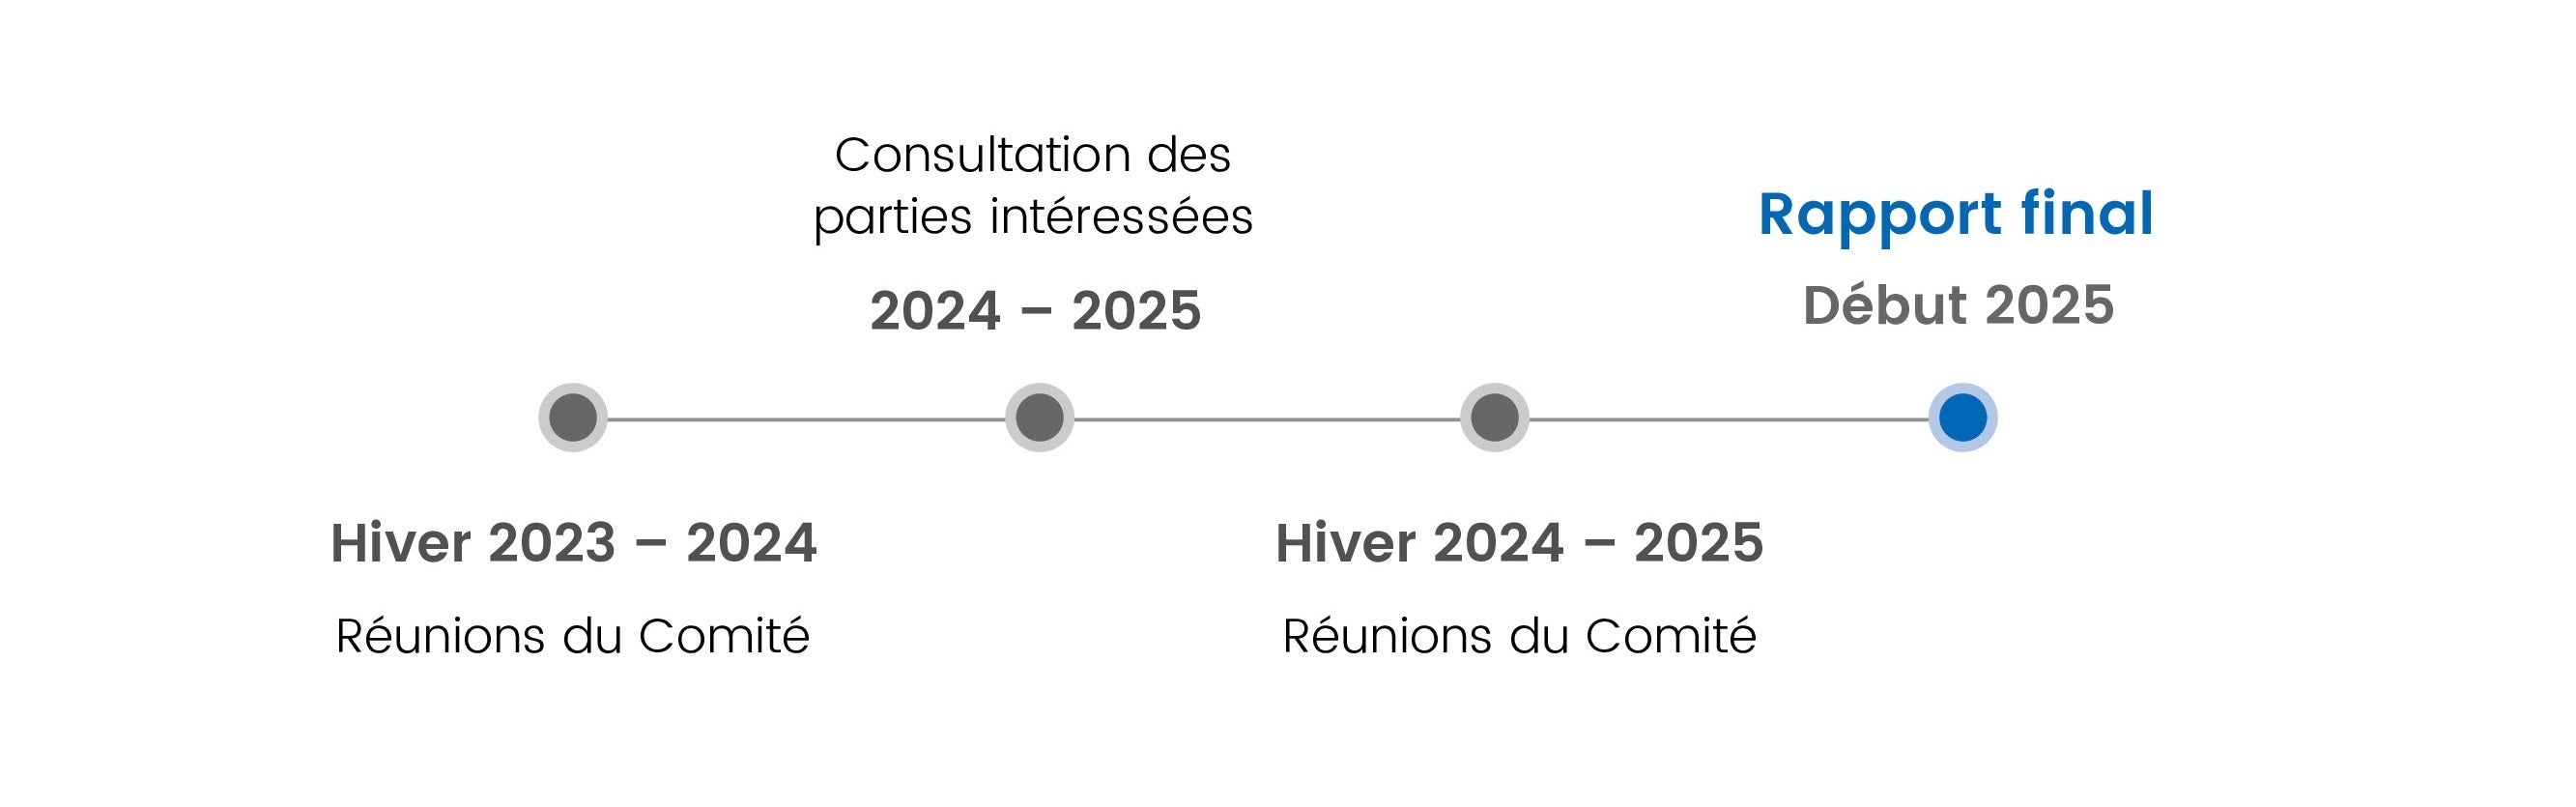 Échéancier du projet : réunions du Comité, hiver 2023-2024; consultation des partenaires, 2024-2025; réunions du Comité, hiver 2024-2025; rapport final, début 2025